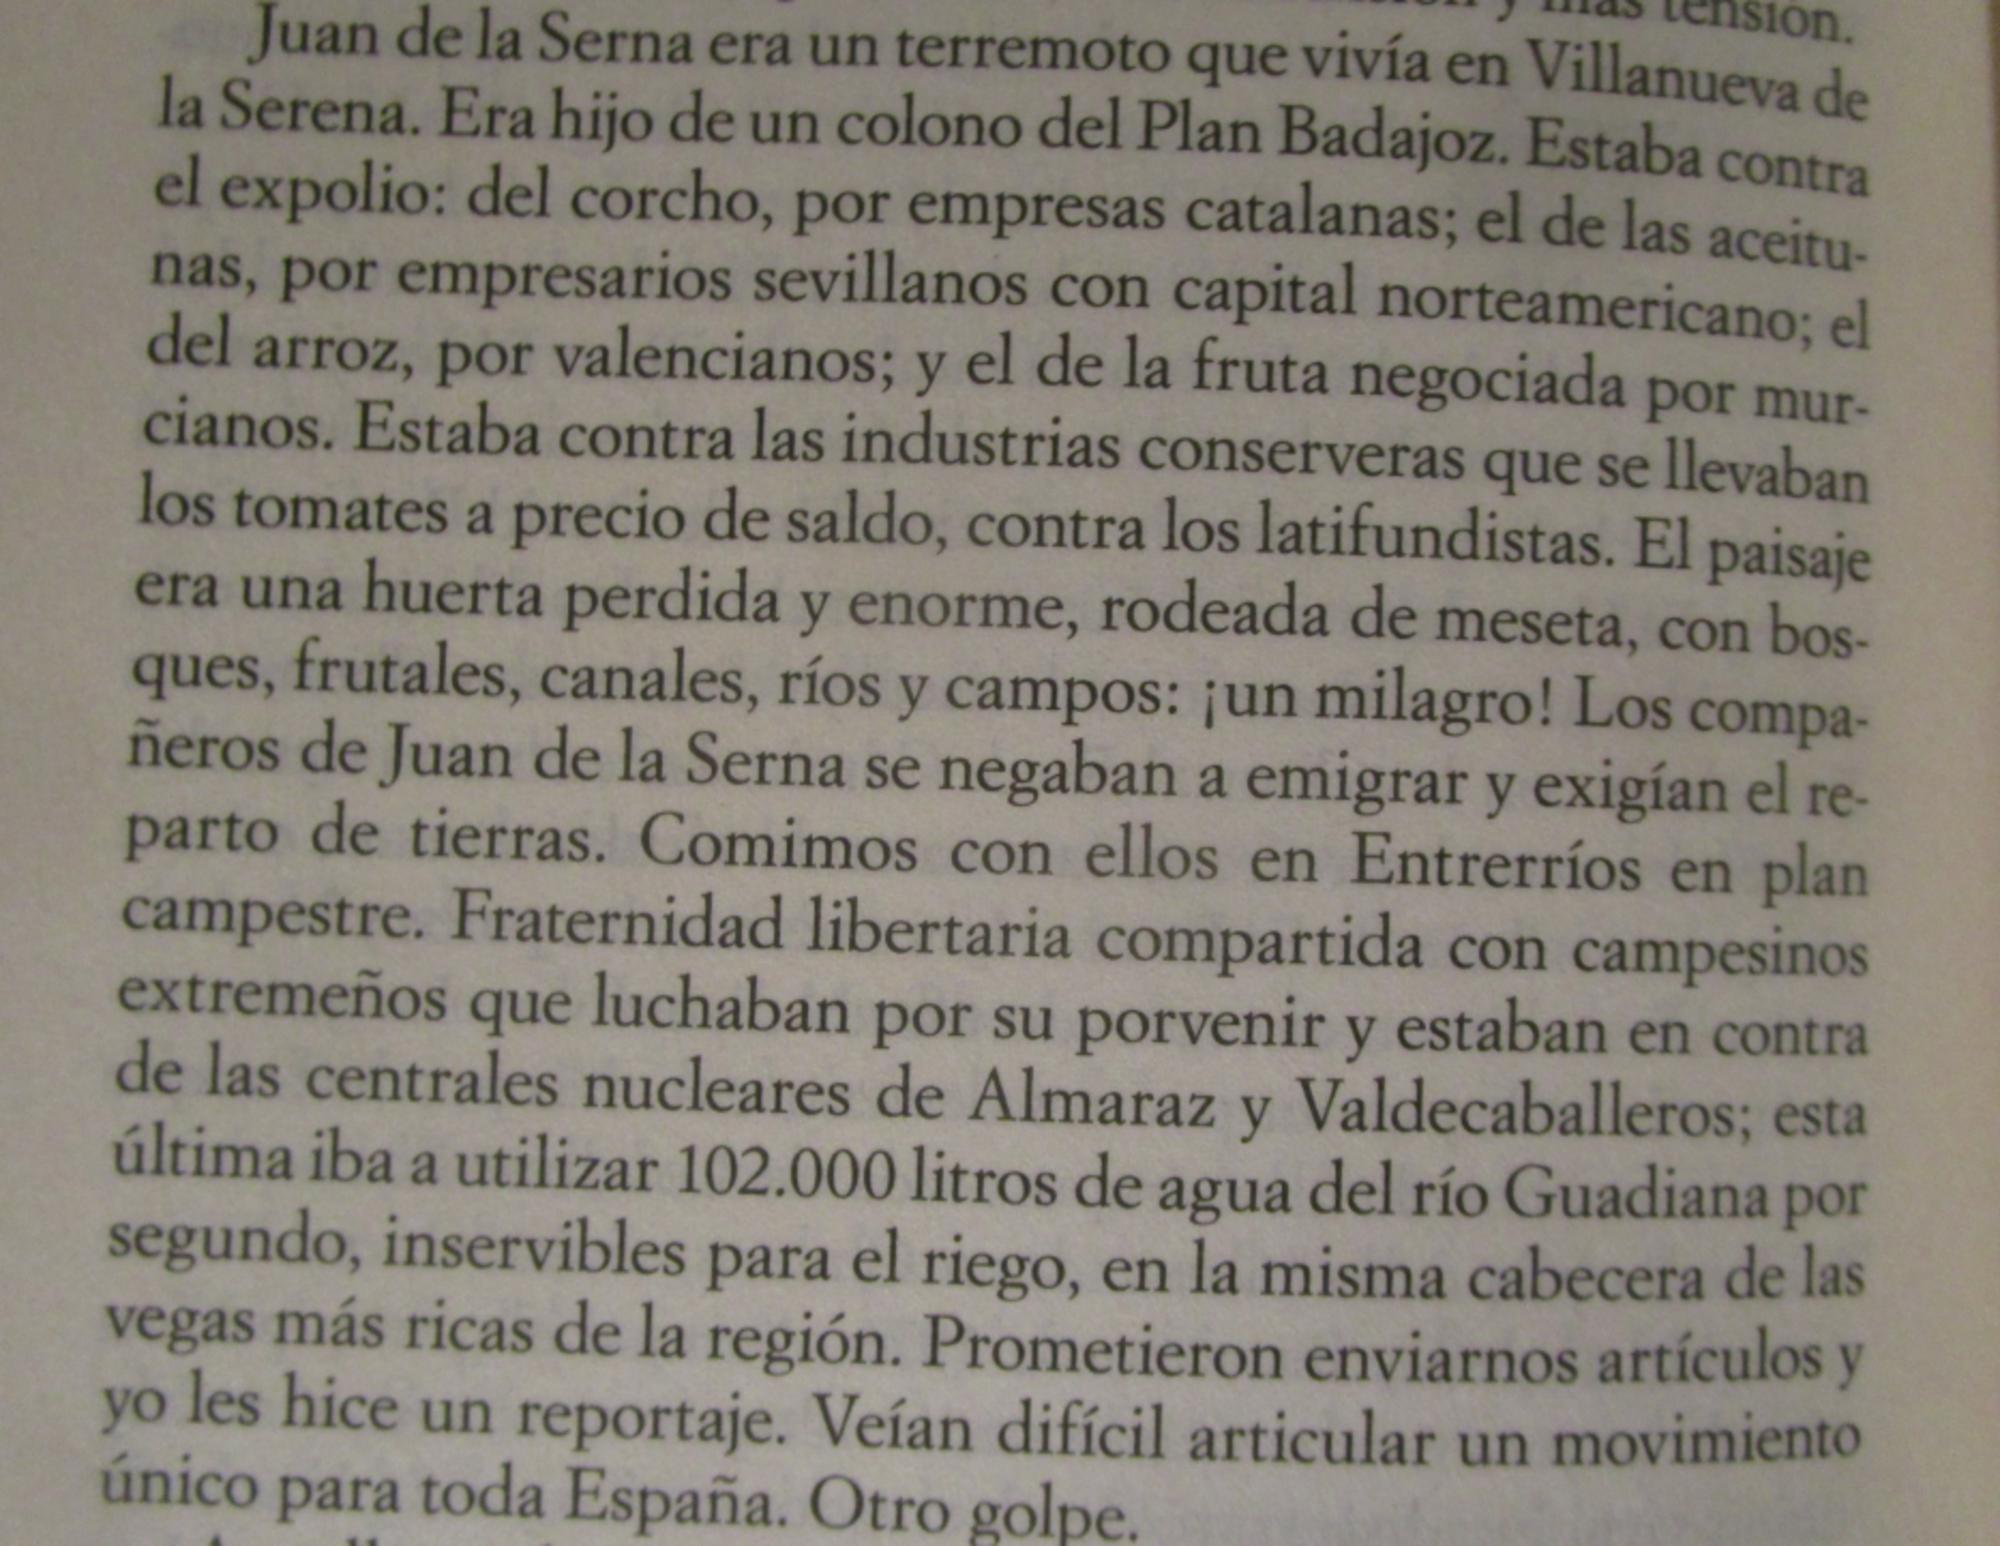 Extracto sobre Juan Serna, el plan Badajoz y el expolio extremeño. 